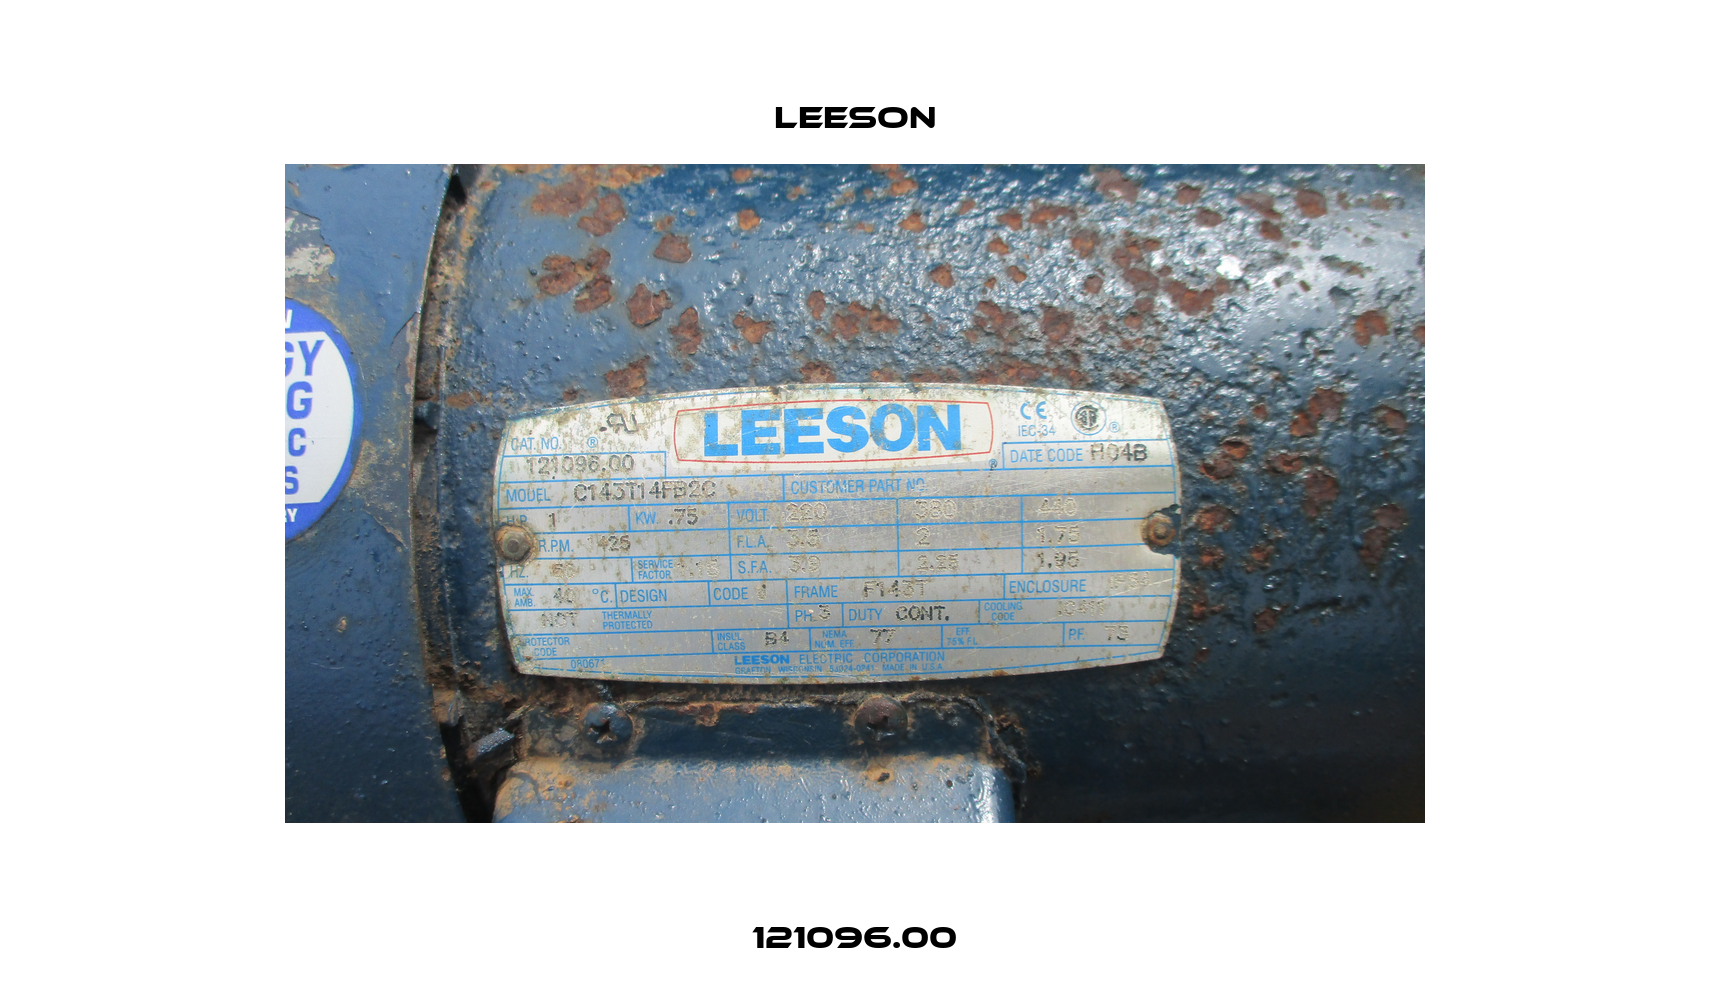 121096.00 Leeson